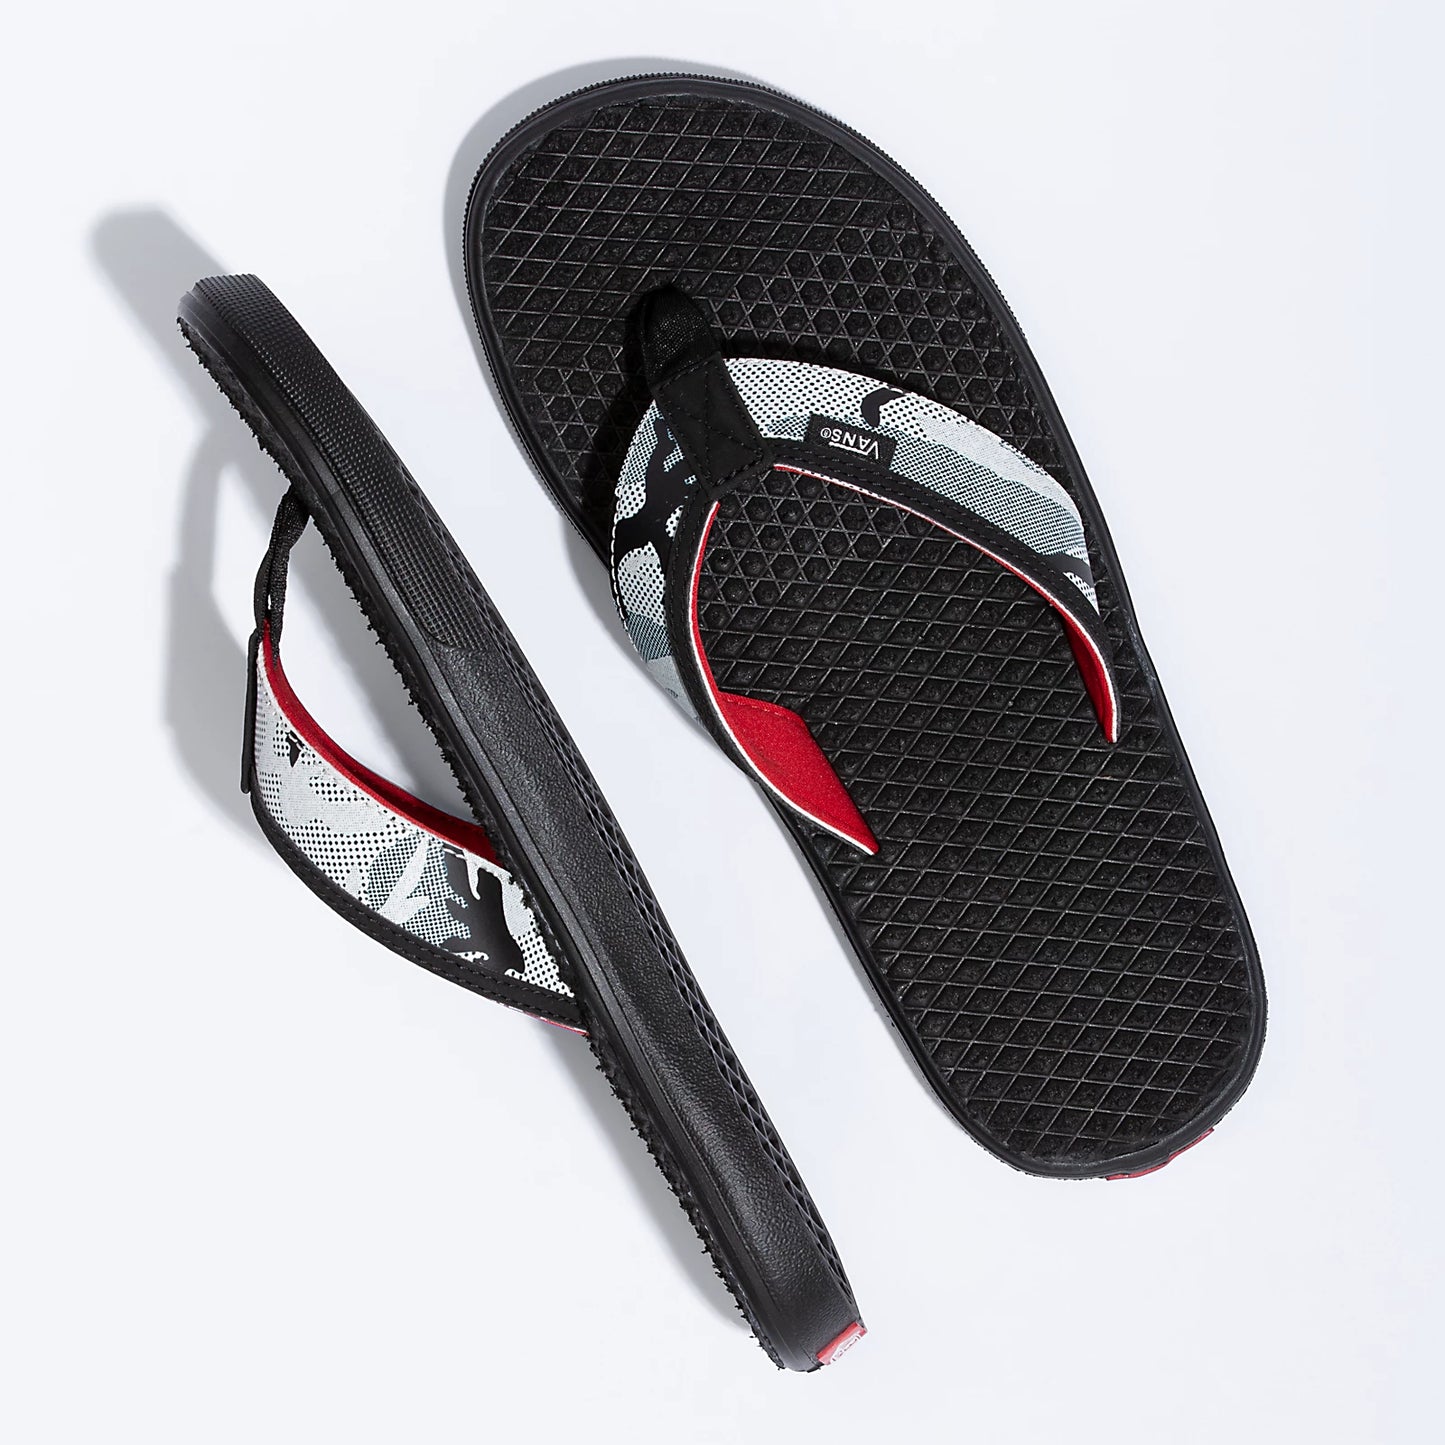 Vans La Costa Lite Sandals - ARCTIC CAMO BLACK Mens Footwear